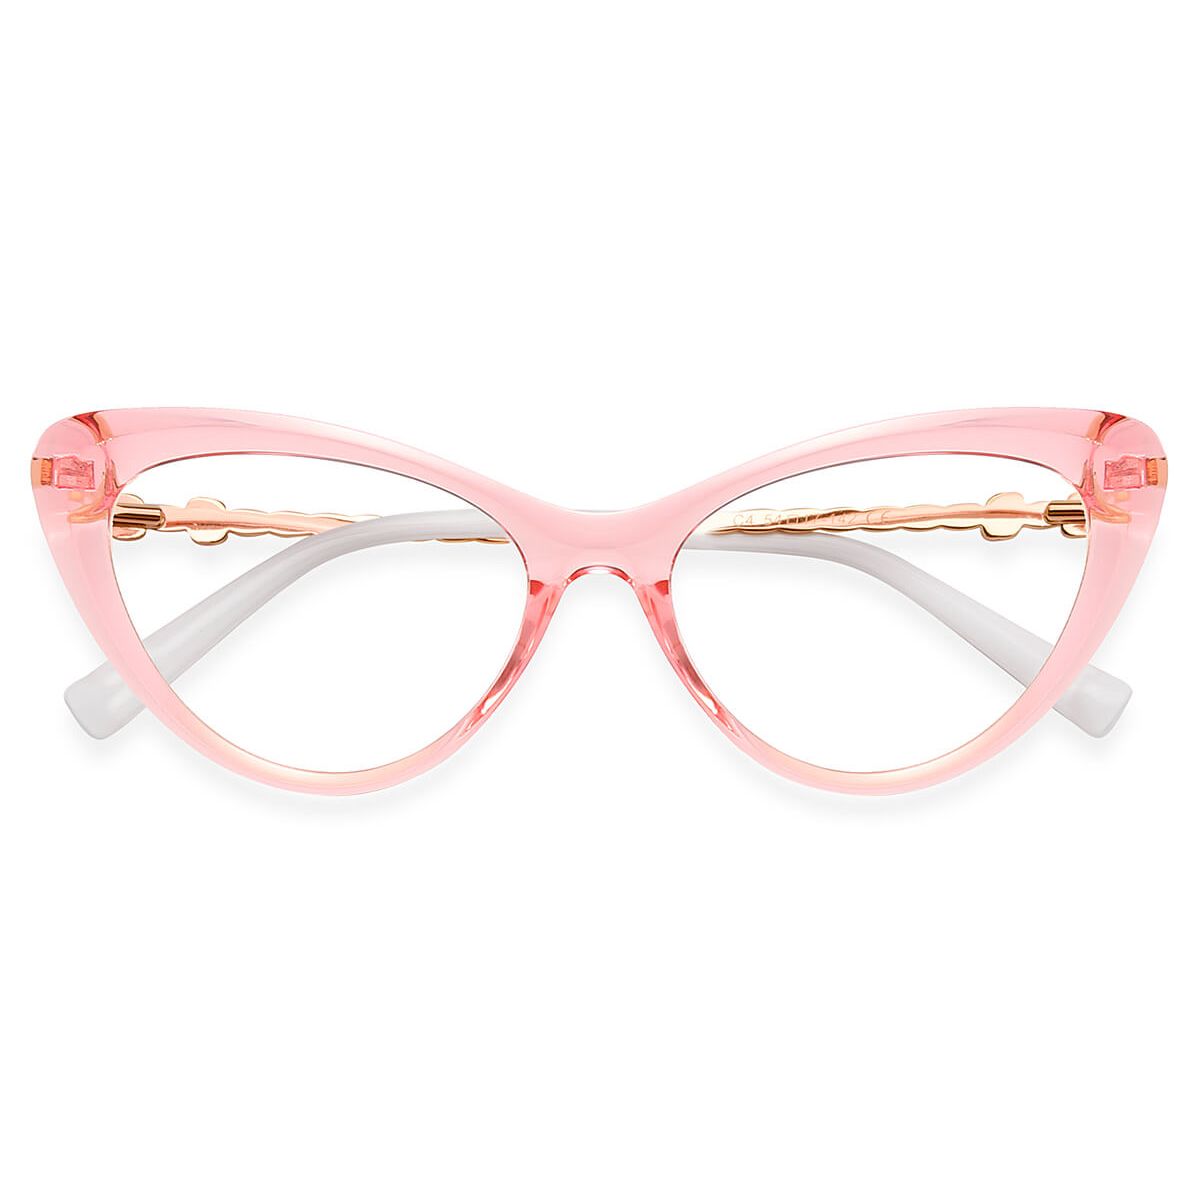 P2073 Cat-eye Pink Eyeglasses Frames | Leoptique